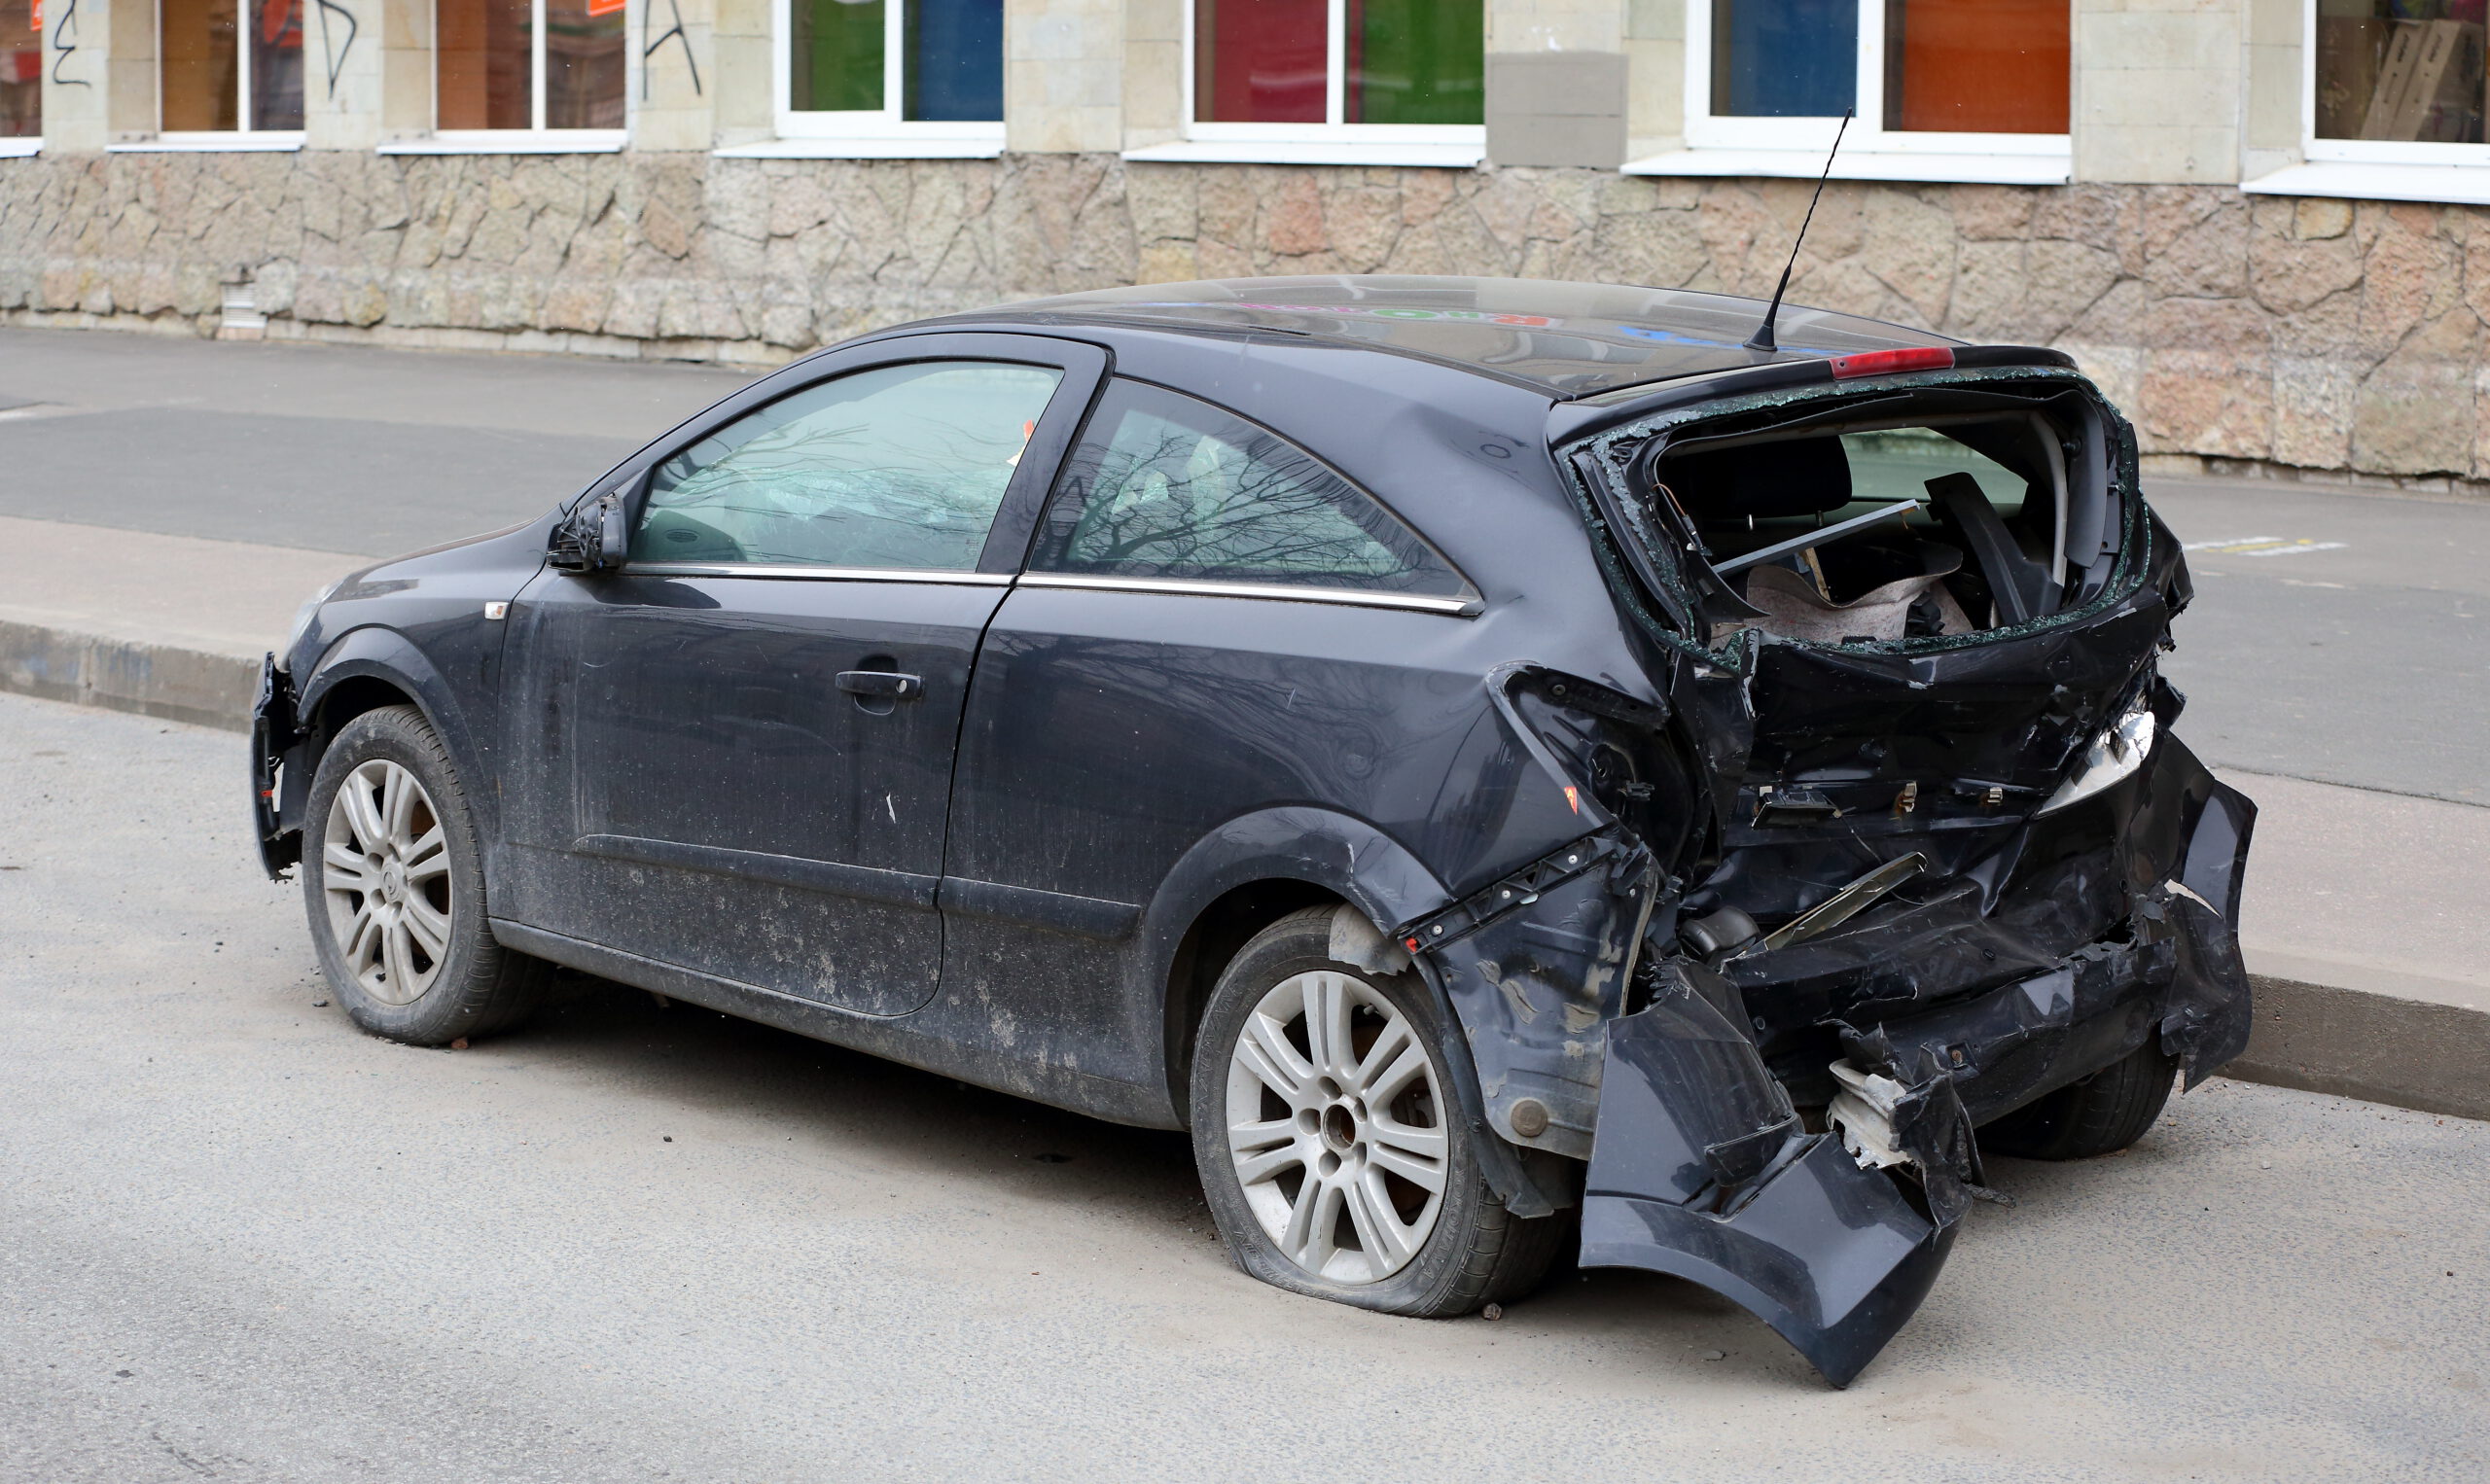 קונה רכבים אחרי תאונה – הכירו את התהליך